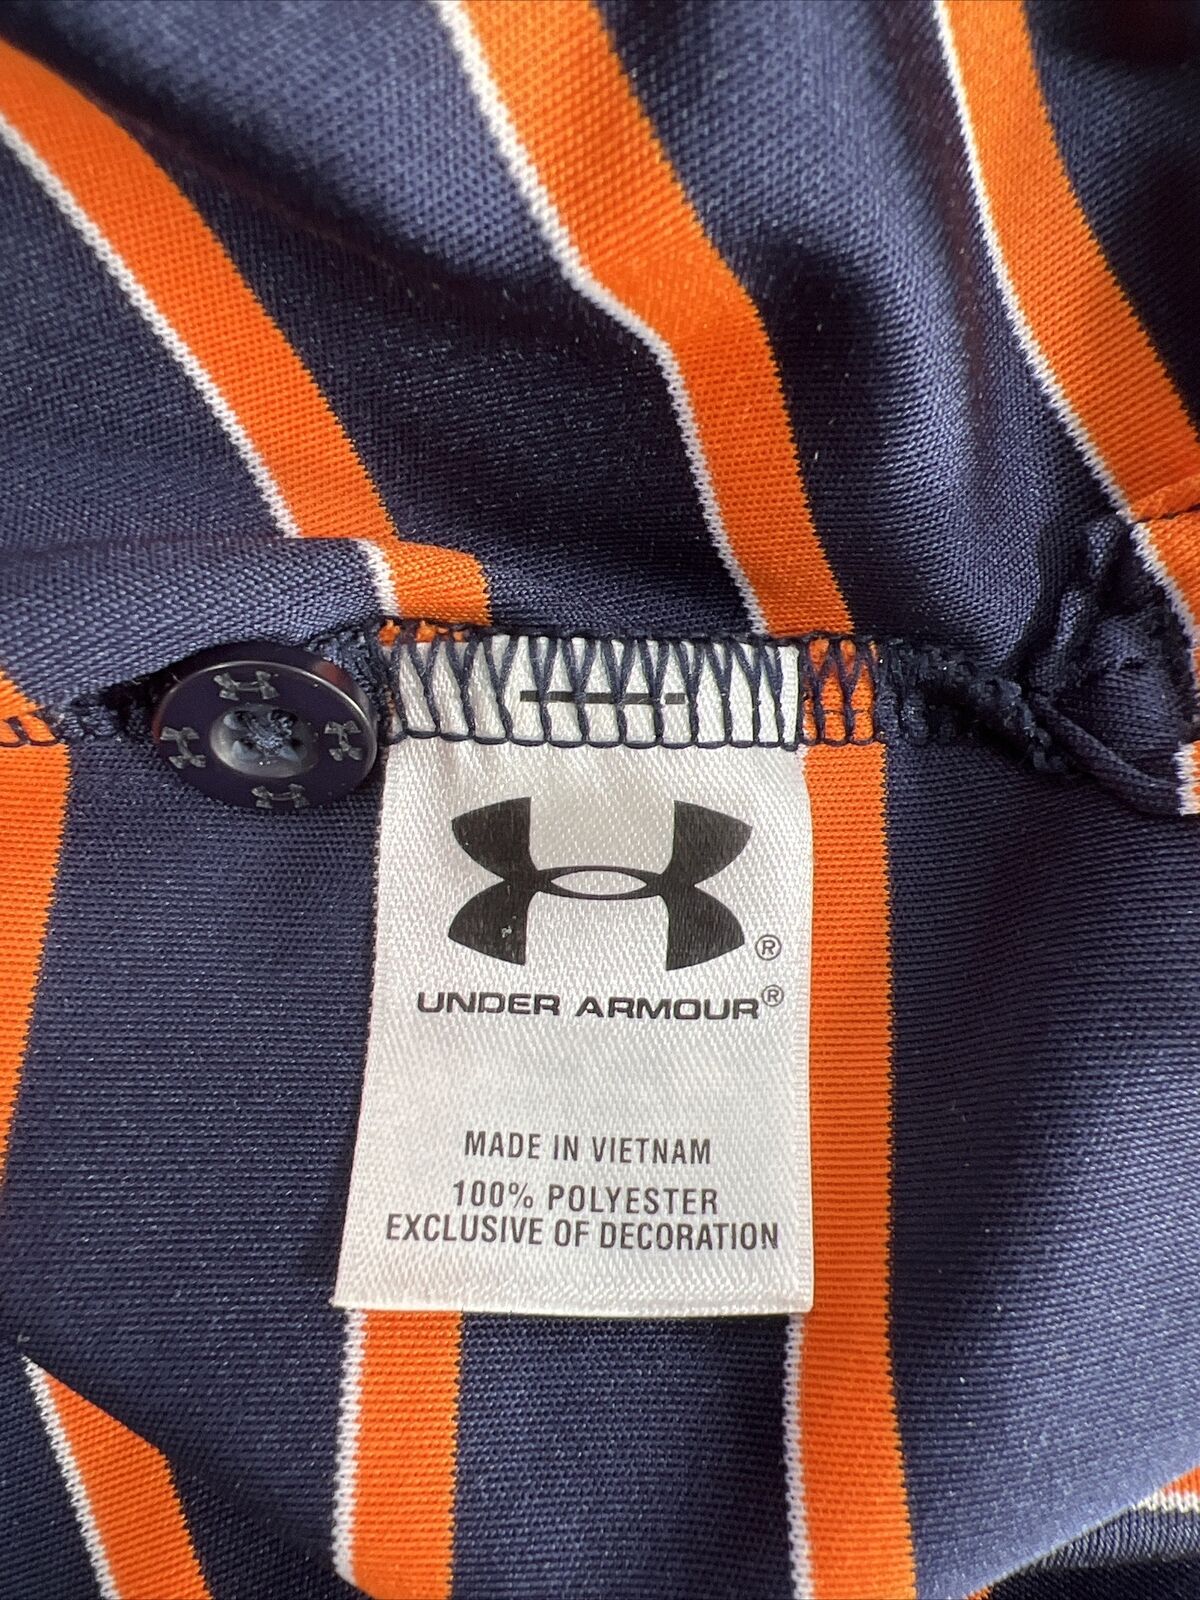 Under Armour Men's Blue Striped Short Sleeve HeatGear Golf Polo Shirt - M